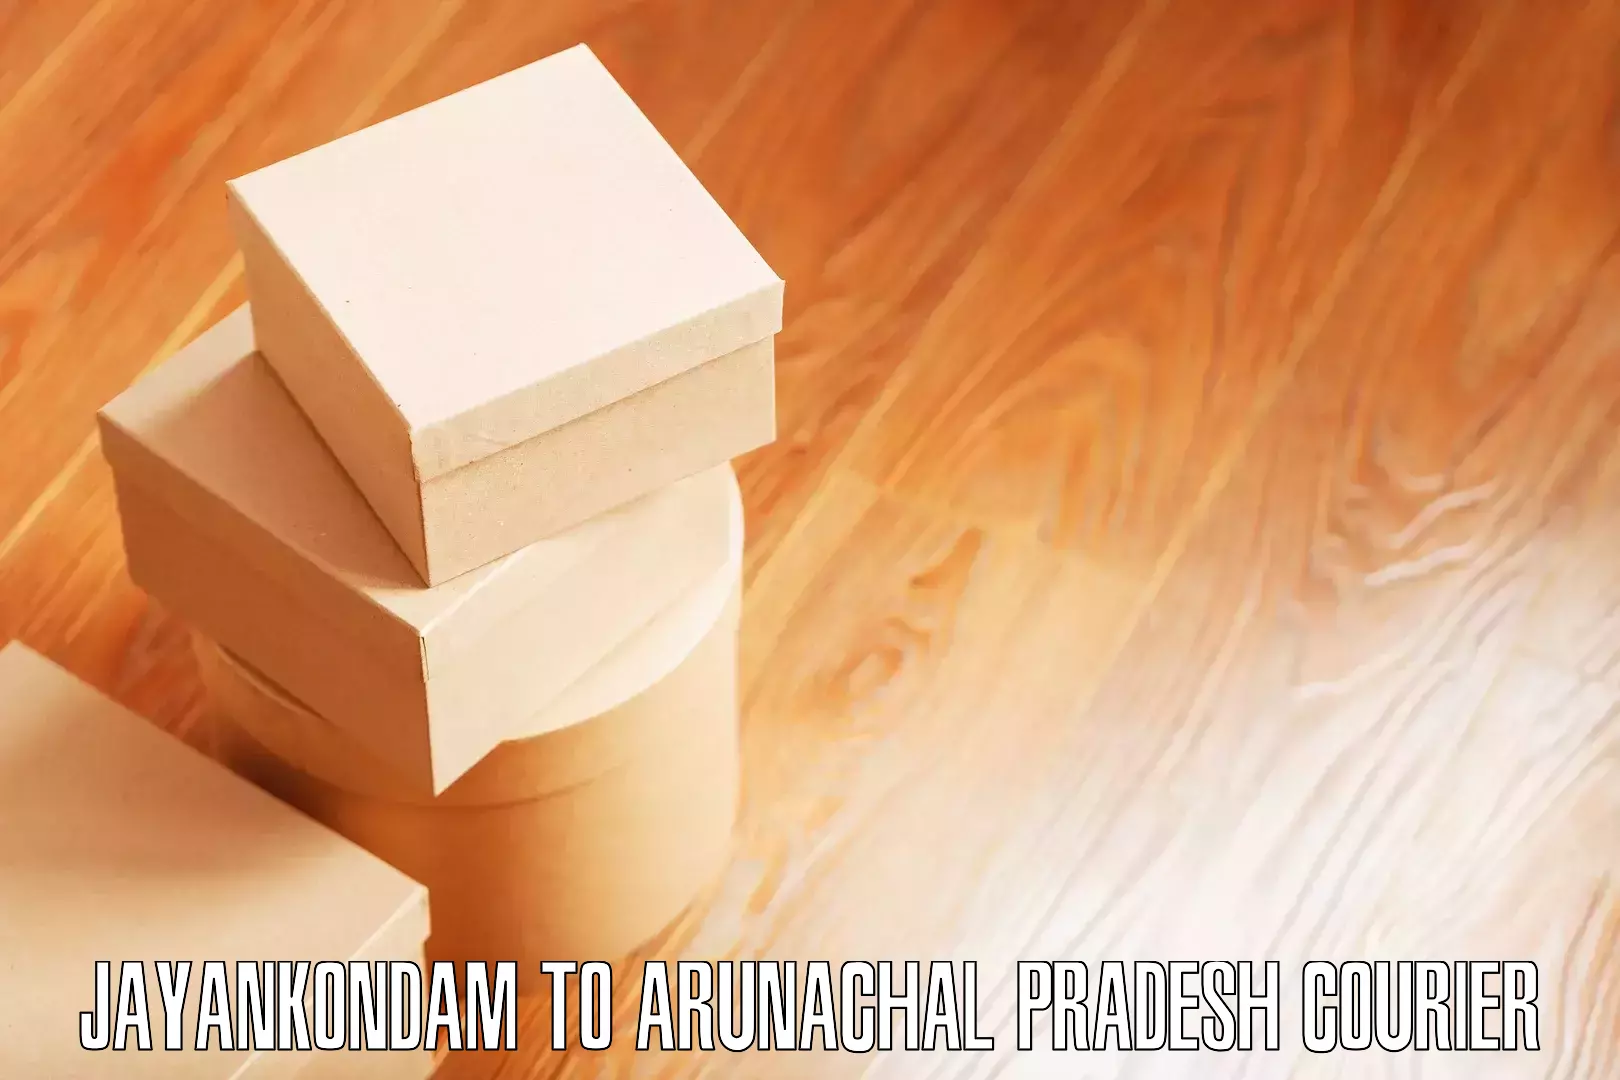 Professional furniture movers Jayankondam to Chowkham